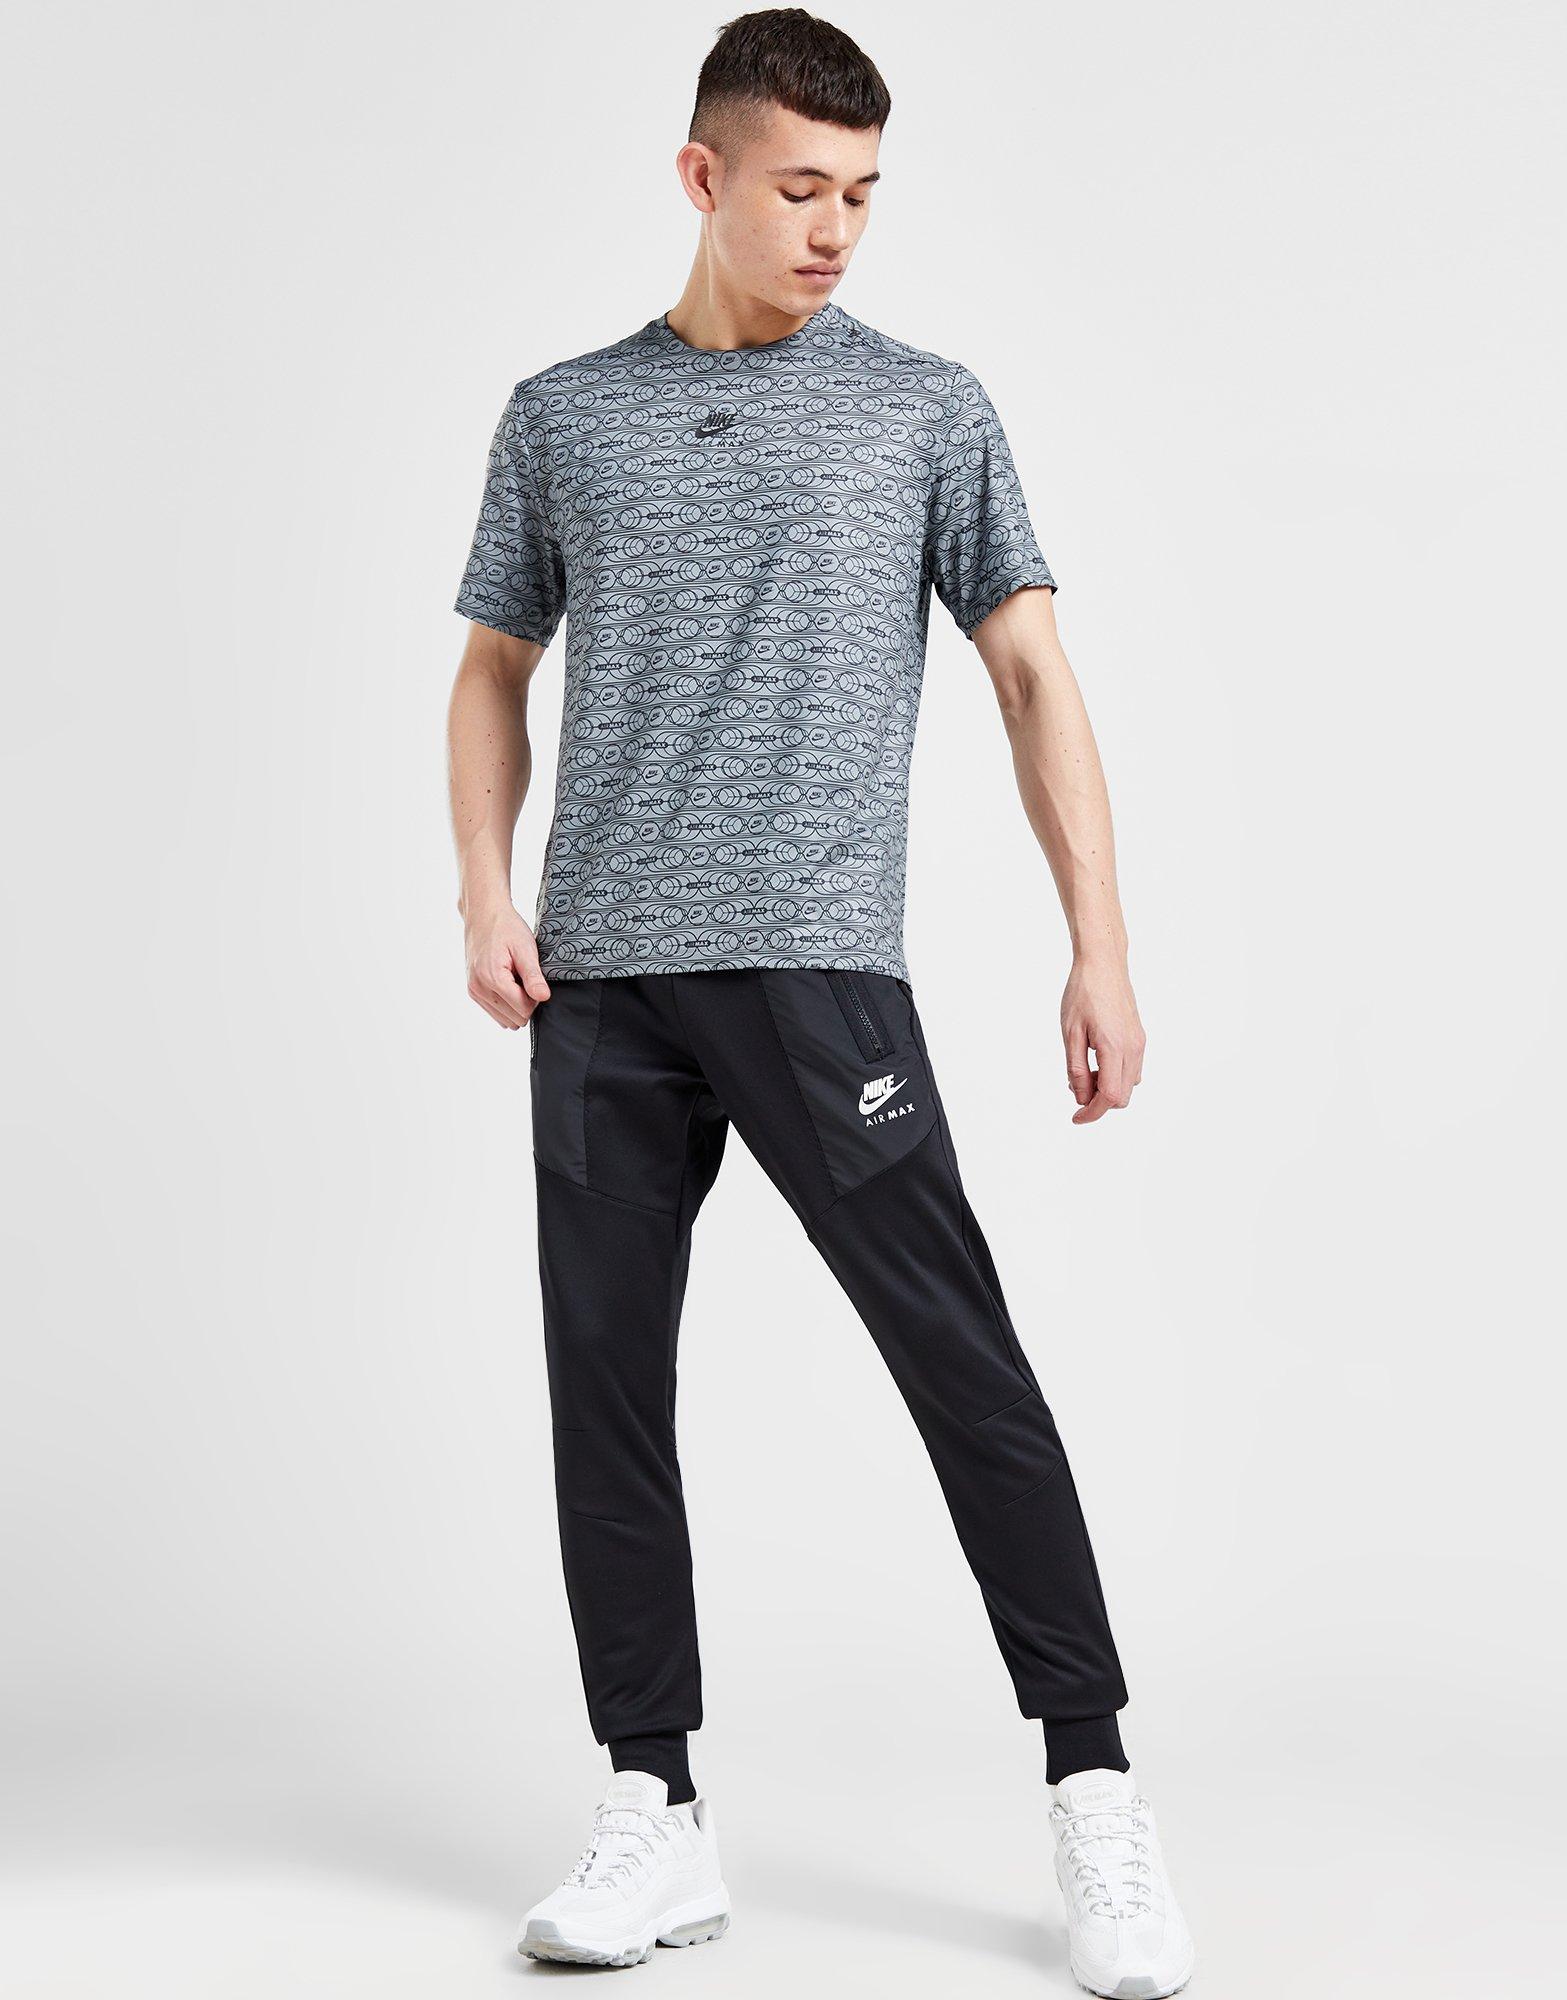 Nike Sportswear Men's Unlined Utility Cargo Pants, Black, Medium